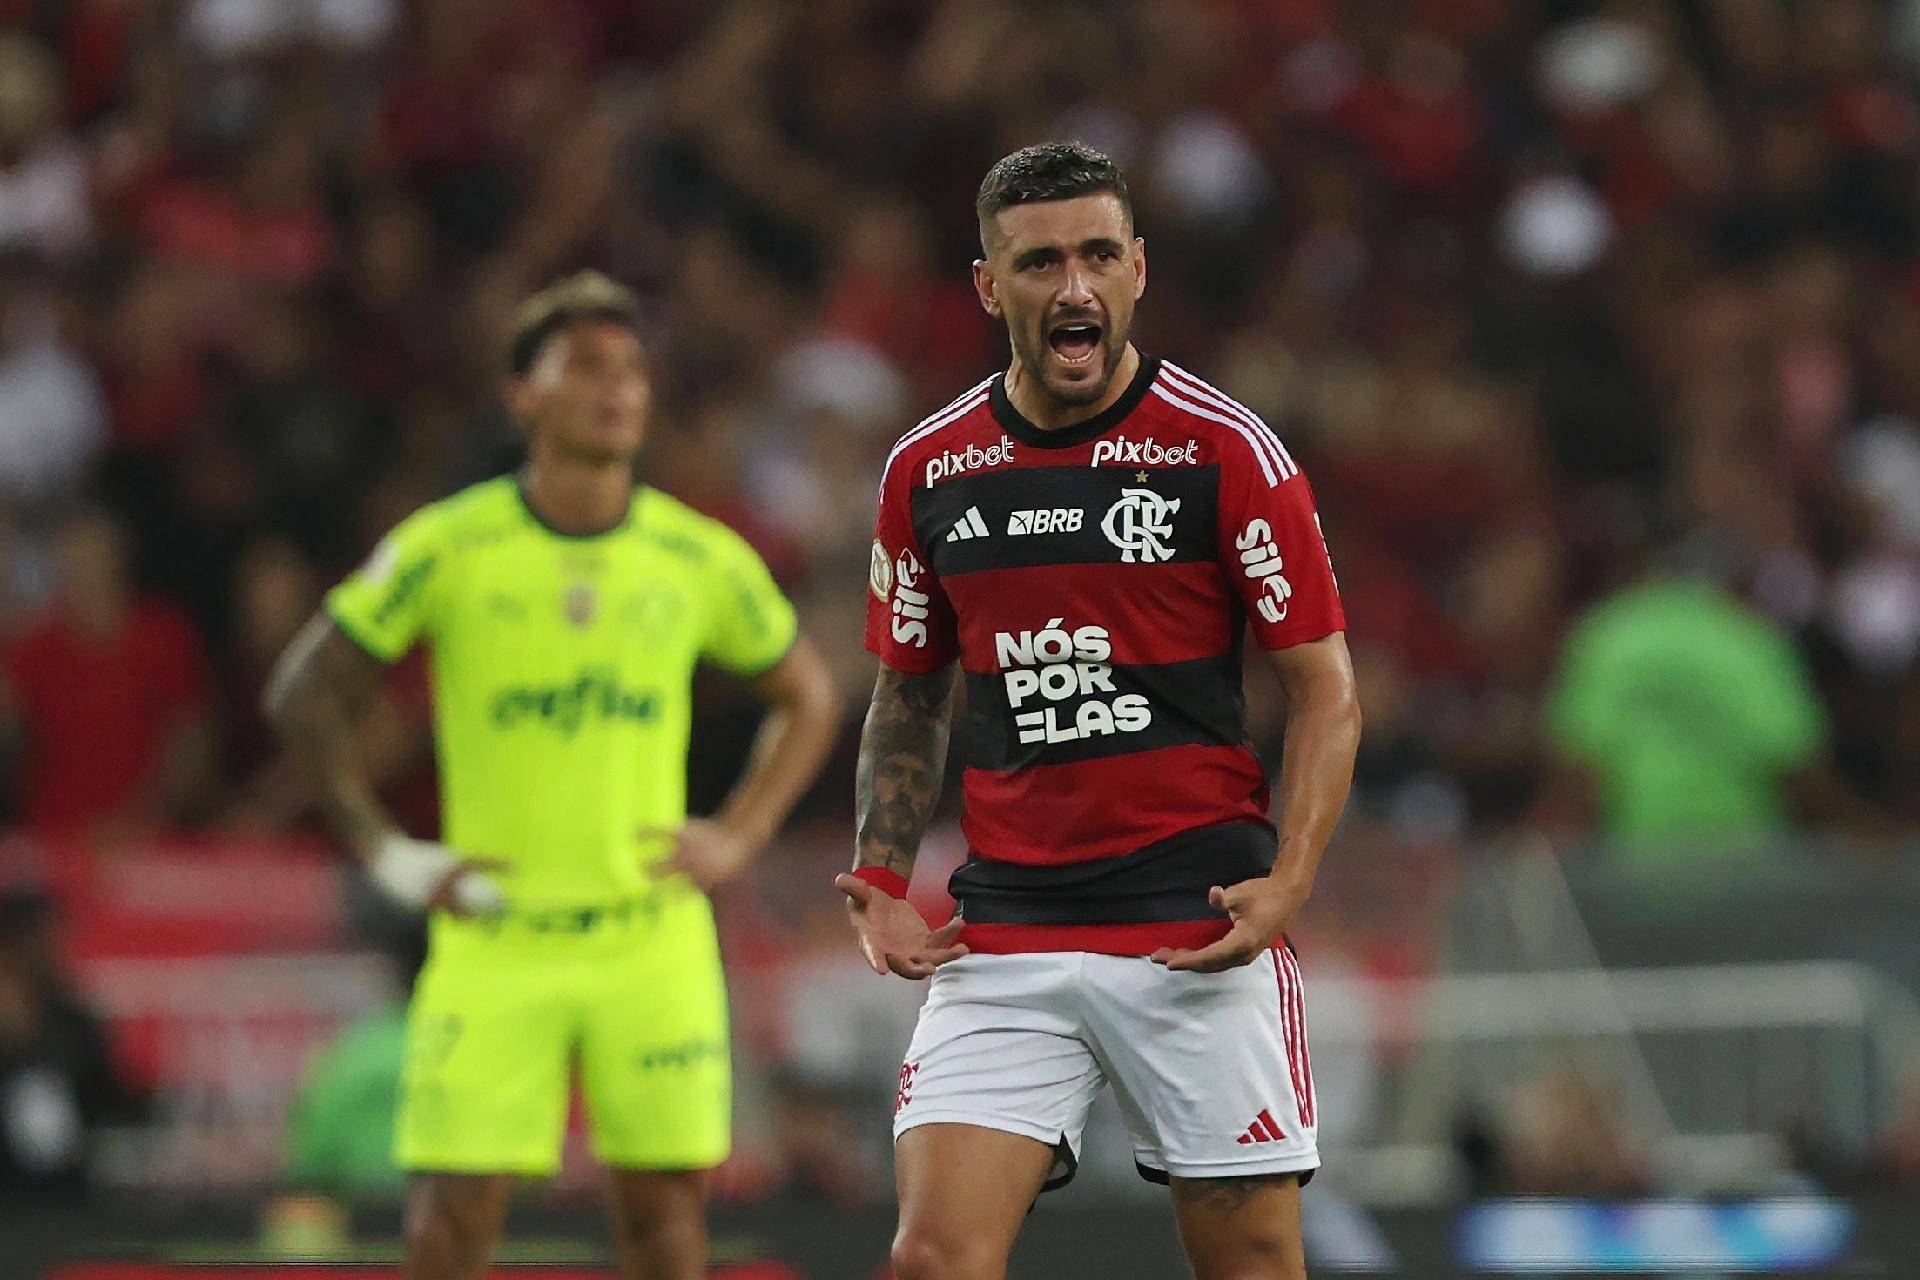 Gomes: Flamengo x Palmeiras é primeiro clássico nacional da nossa história  - 30/09/2021 - UOL Esporte